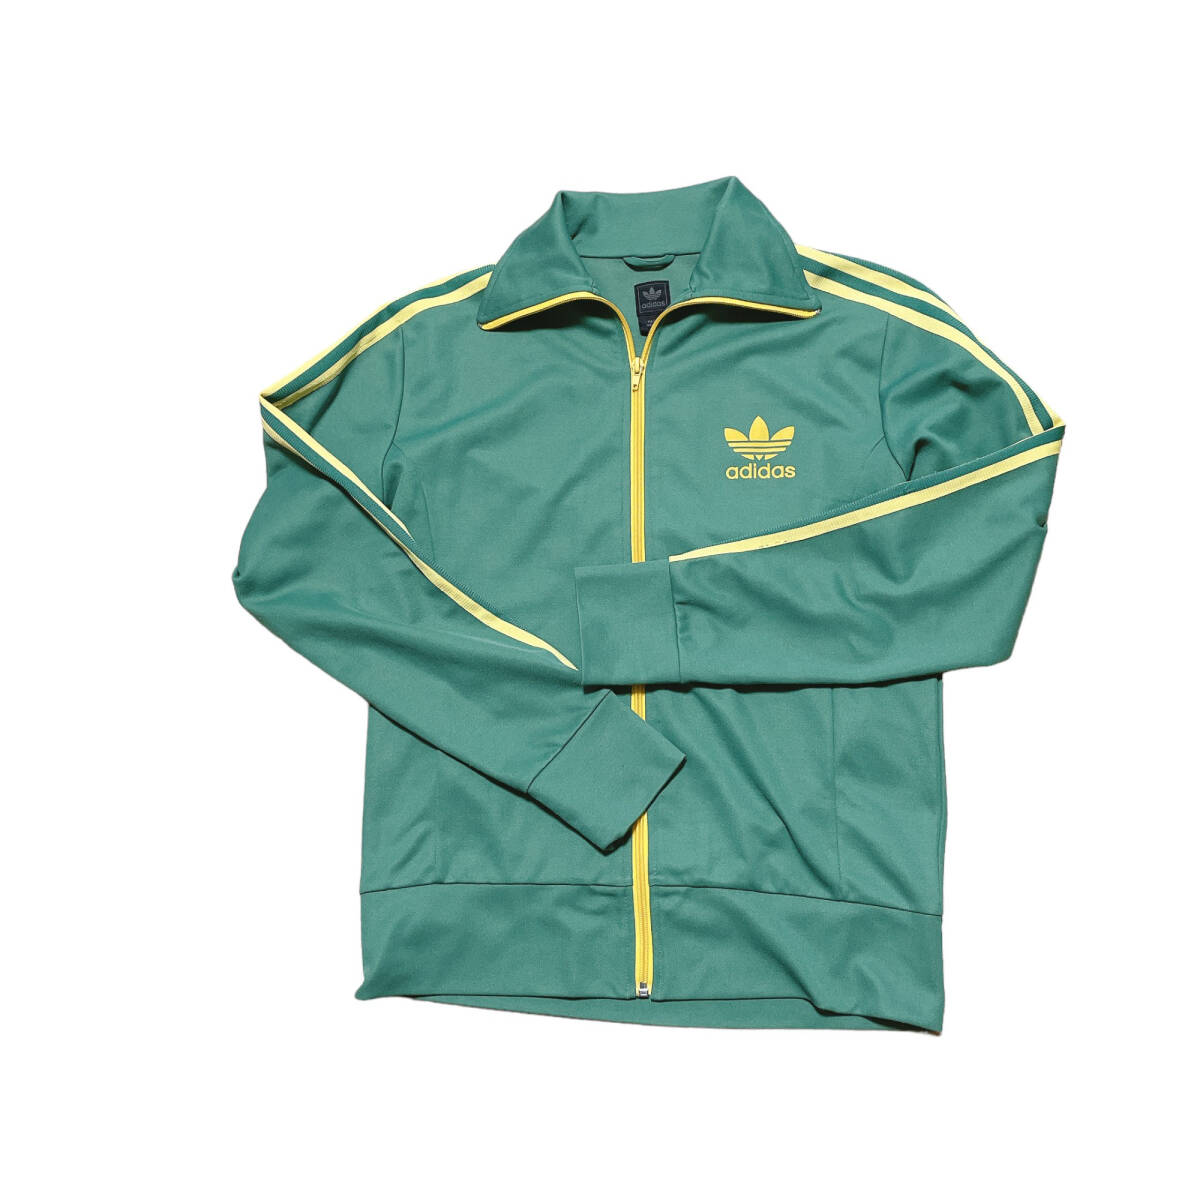 adidas Adidas спортивная куртка джерси национальный флаг бирка 2000 годы зеленый | желтый полоса L размер 